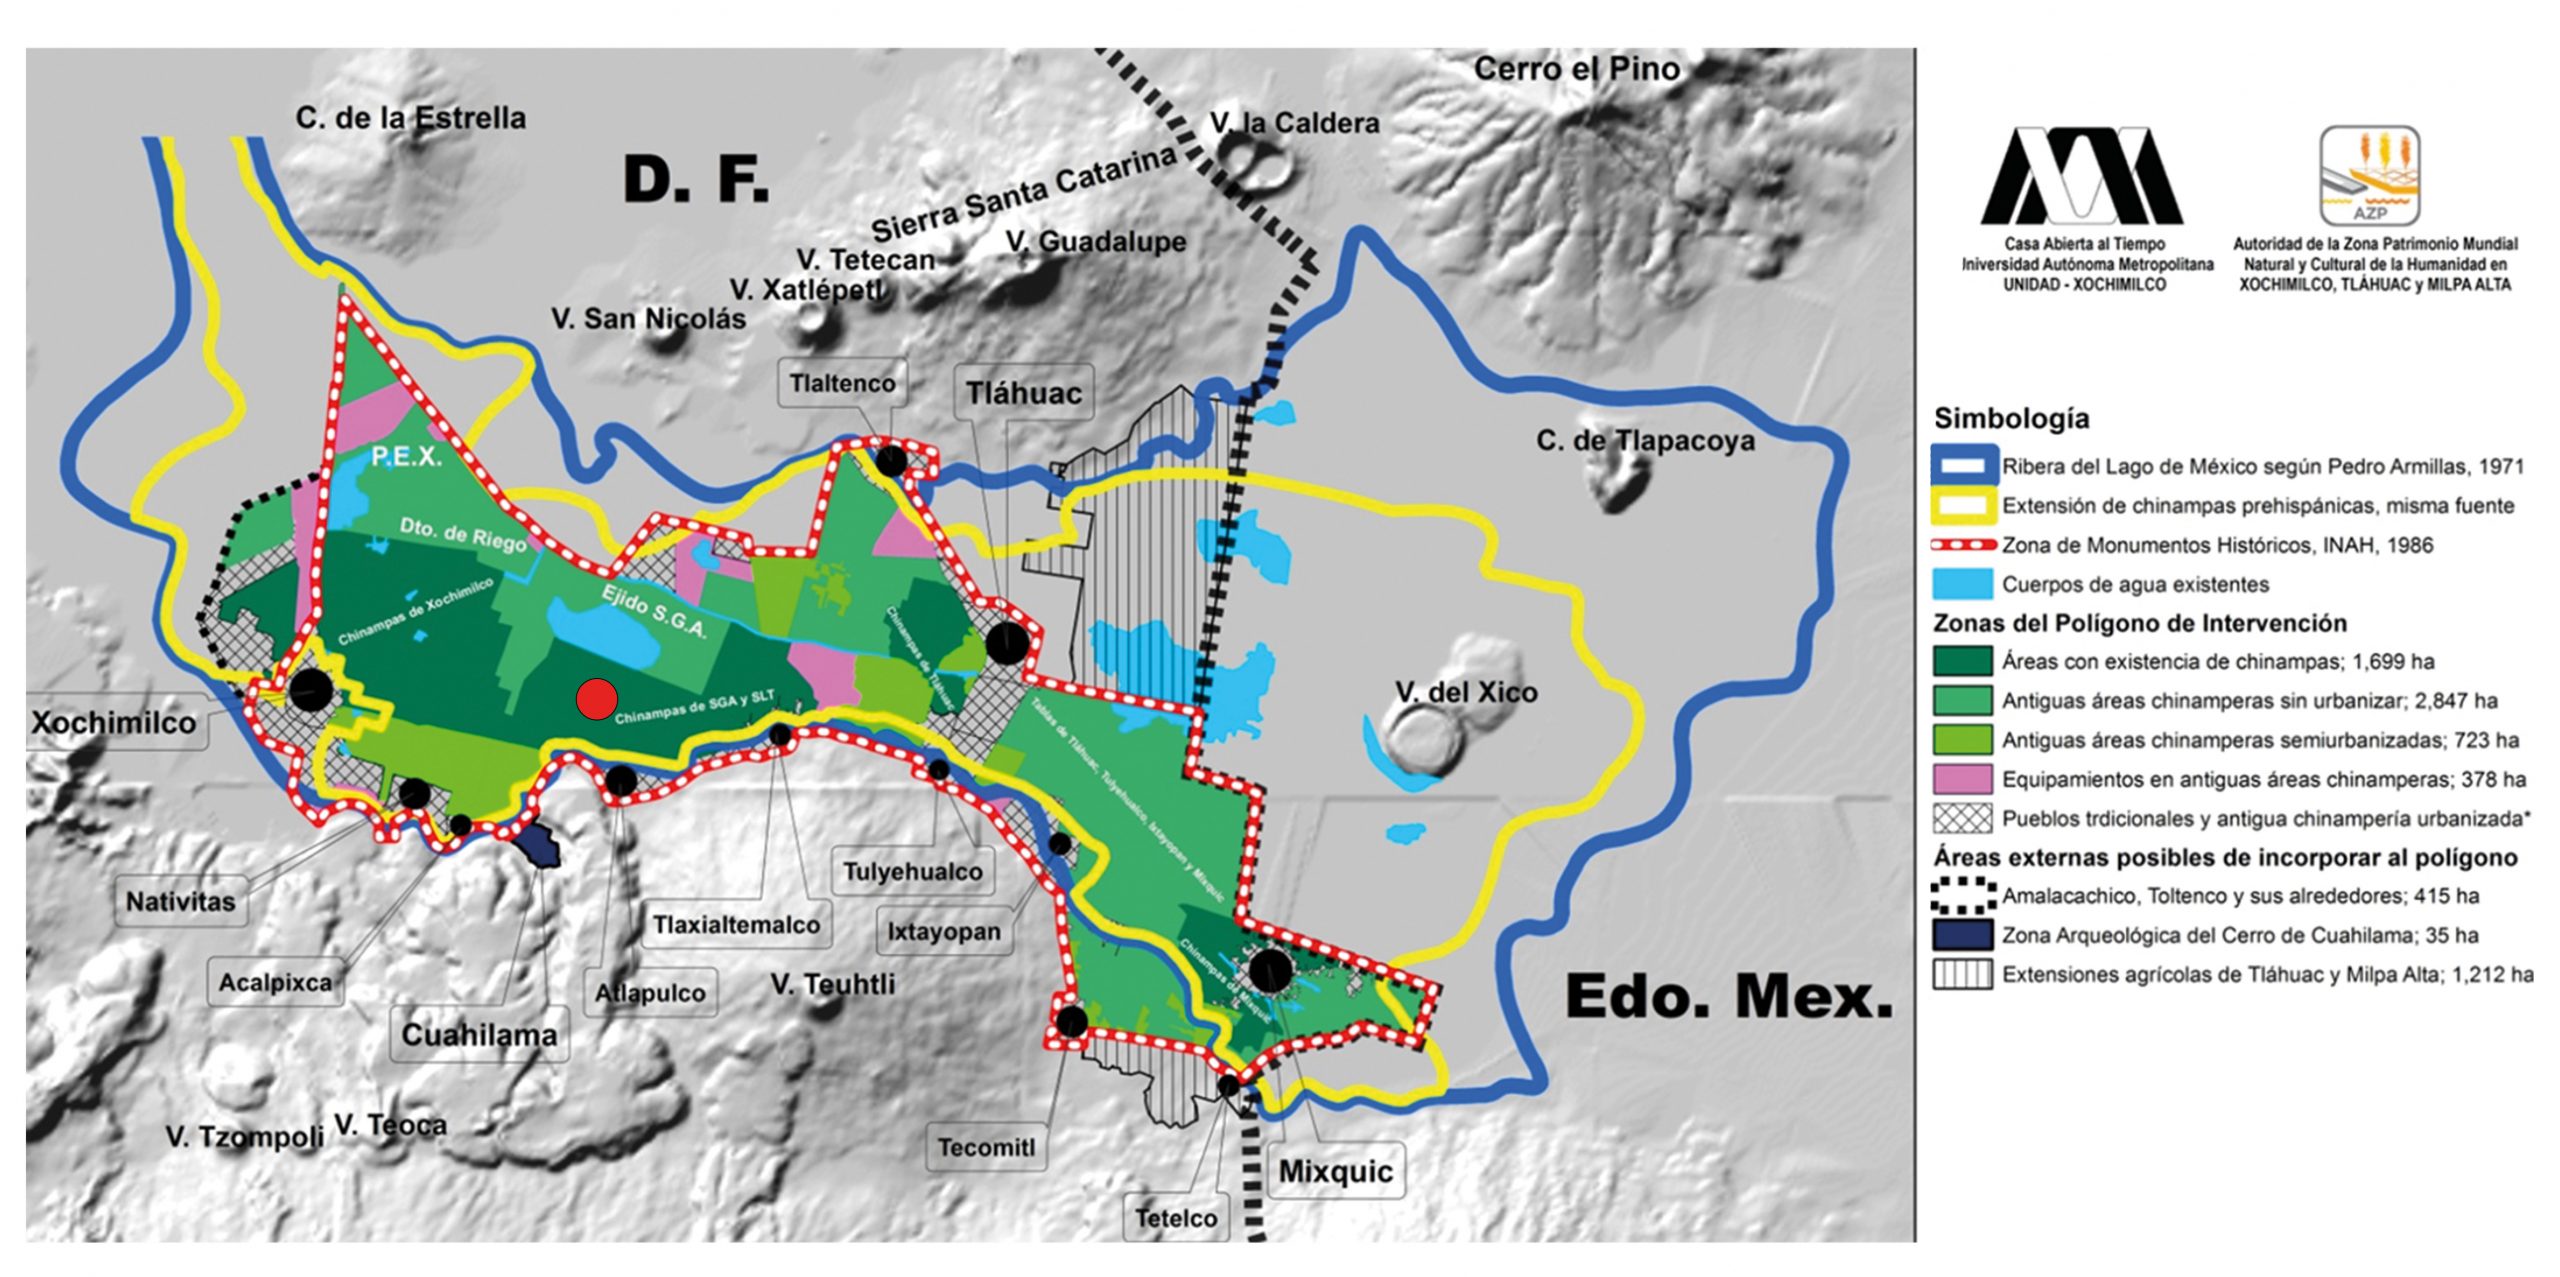 La Zona Patrimonio Mundial en Xochimilco, Tláhuac y Milpa Alta señalada por la línea discontinua roja; en verde oscuro las 5 zonas chinamperas; los círculos negros indican los 12 poblados originarios ribereños. El círculo rojo señala la zona donde se inició el catálogo, y las líneas azul y amarillo muestran límites originales de los lagos y las chinampas en 1521.